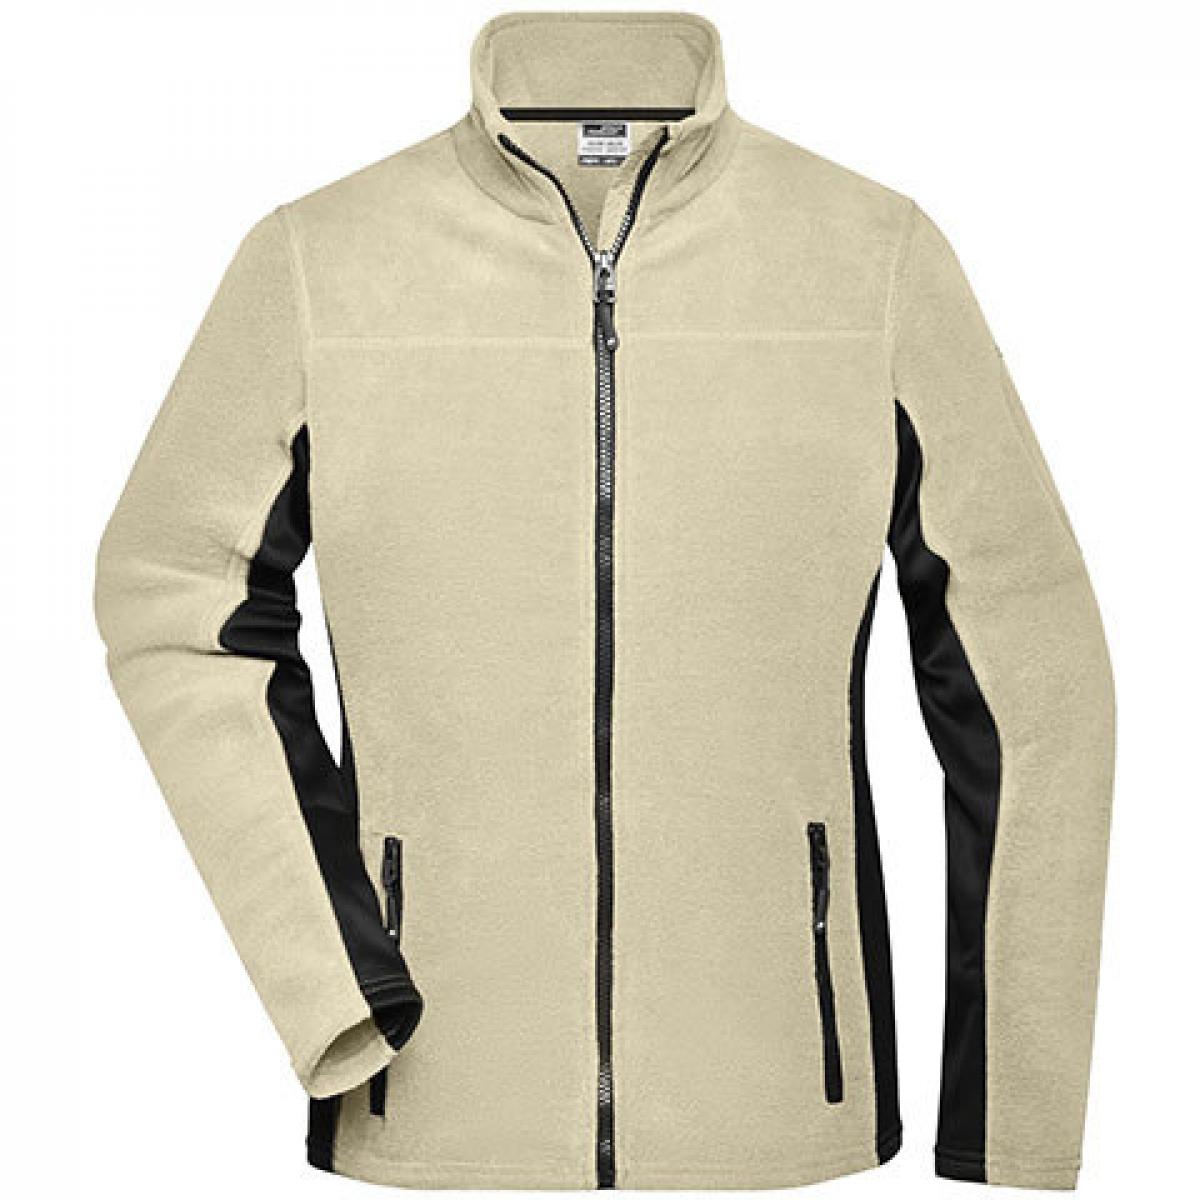 Hersteller: James+Nicholson Herstellernummer: JN841 Artikelbezeichnung: Damen‘ Workwear Fleece Jacket -STRONG- Farbe: Stone/Black